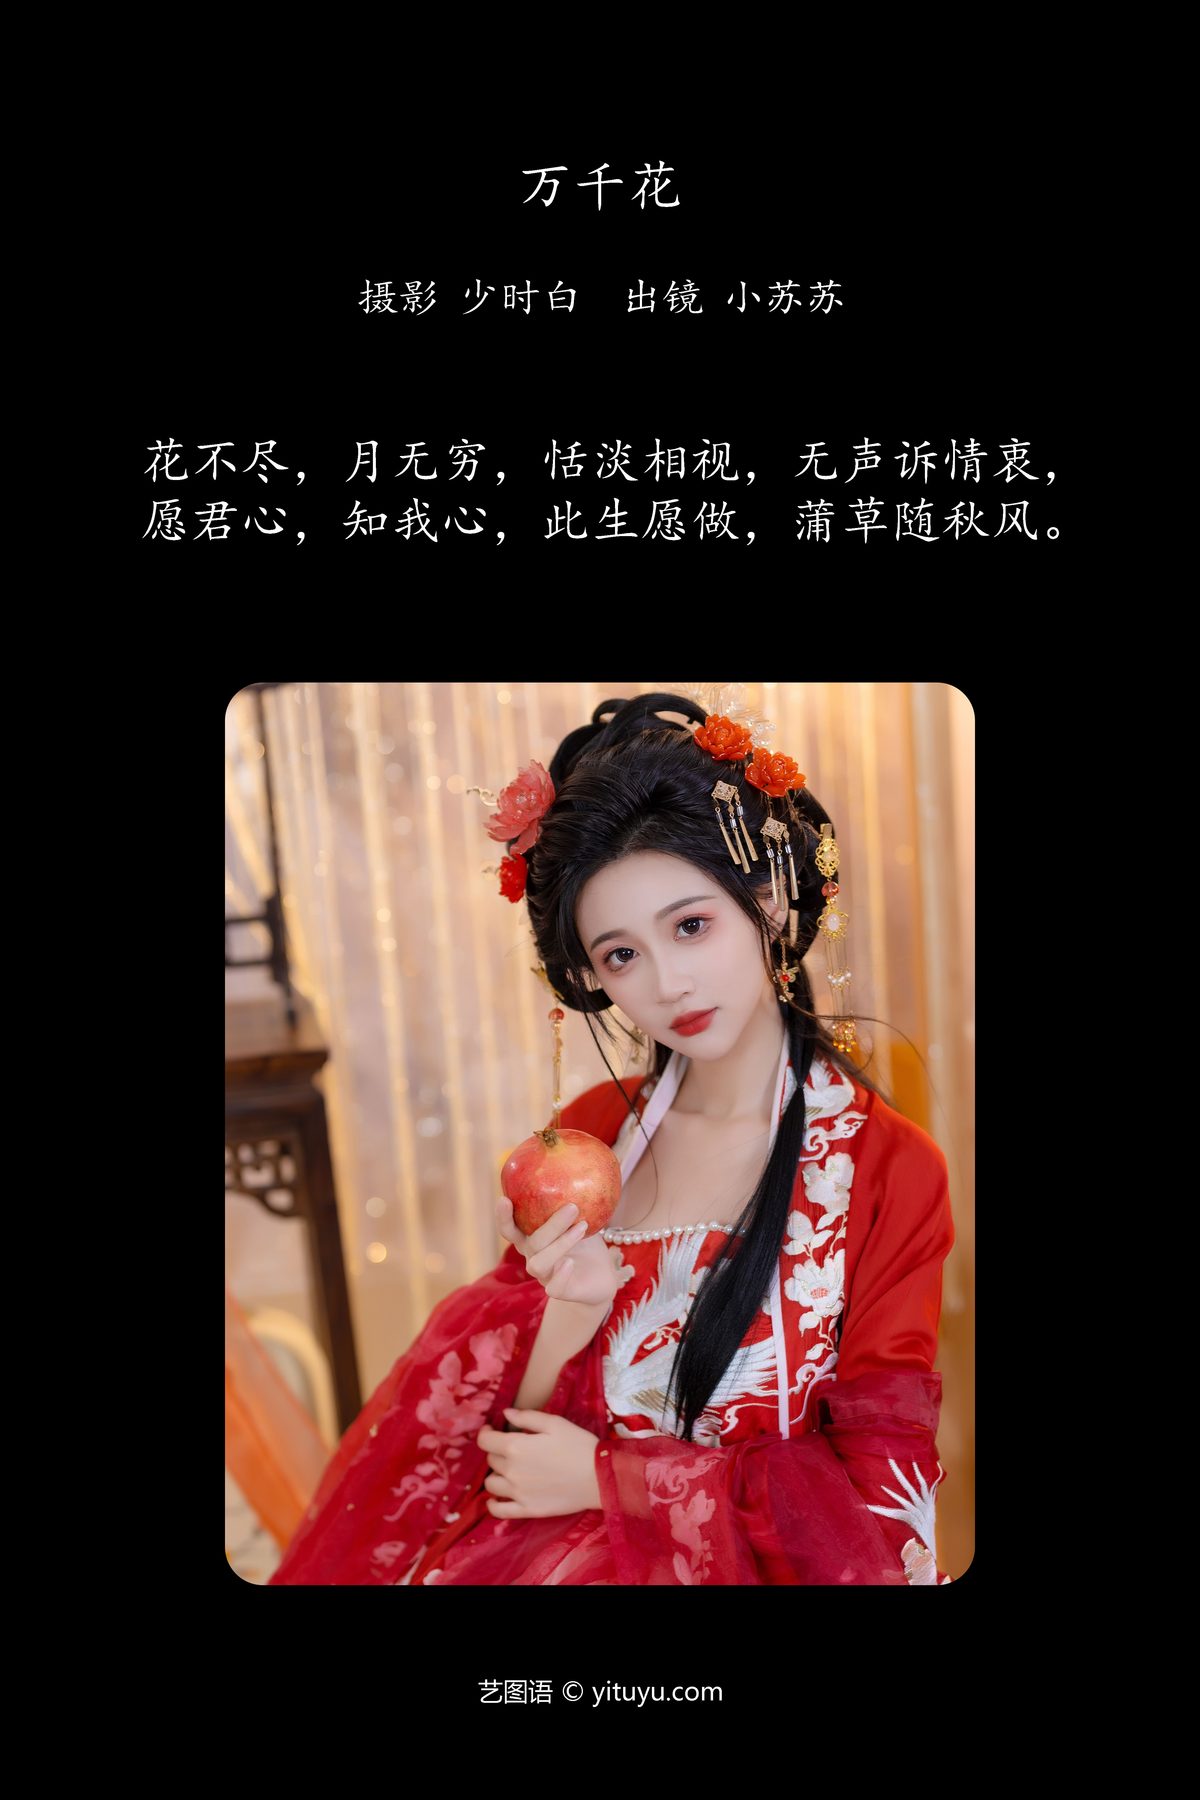 YiTuYu艺图语 Vol 5657 Qi Luo Sheng De Xiao Su Su 0002 2812349537.jpg